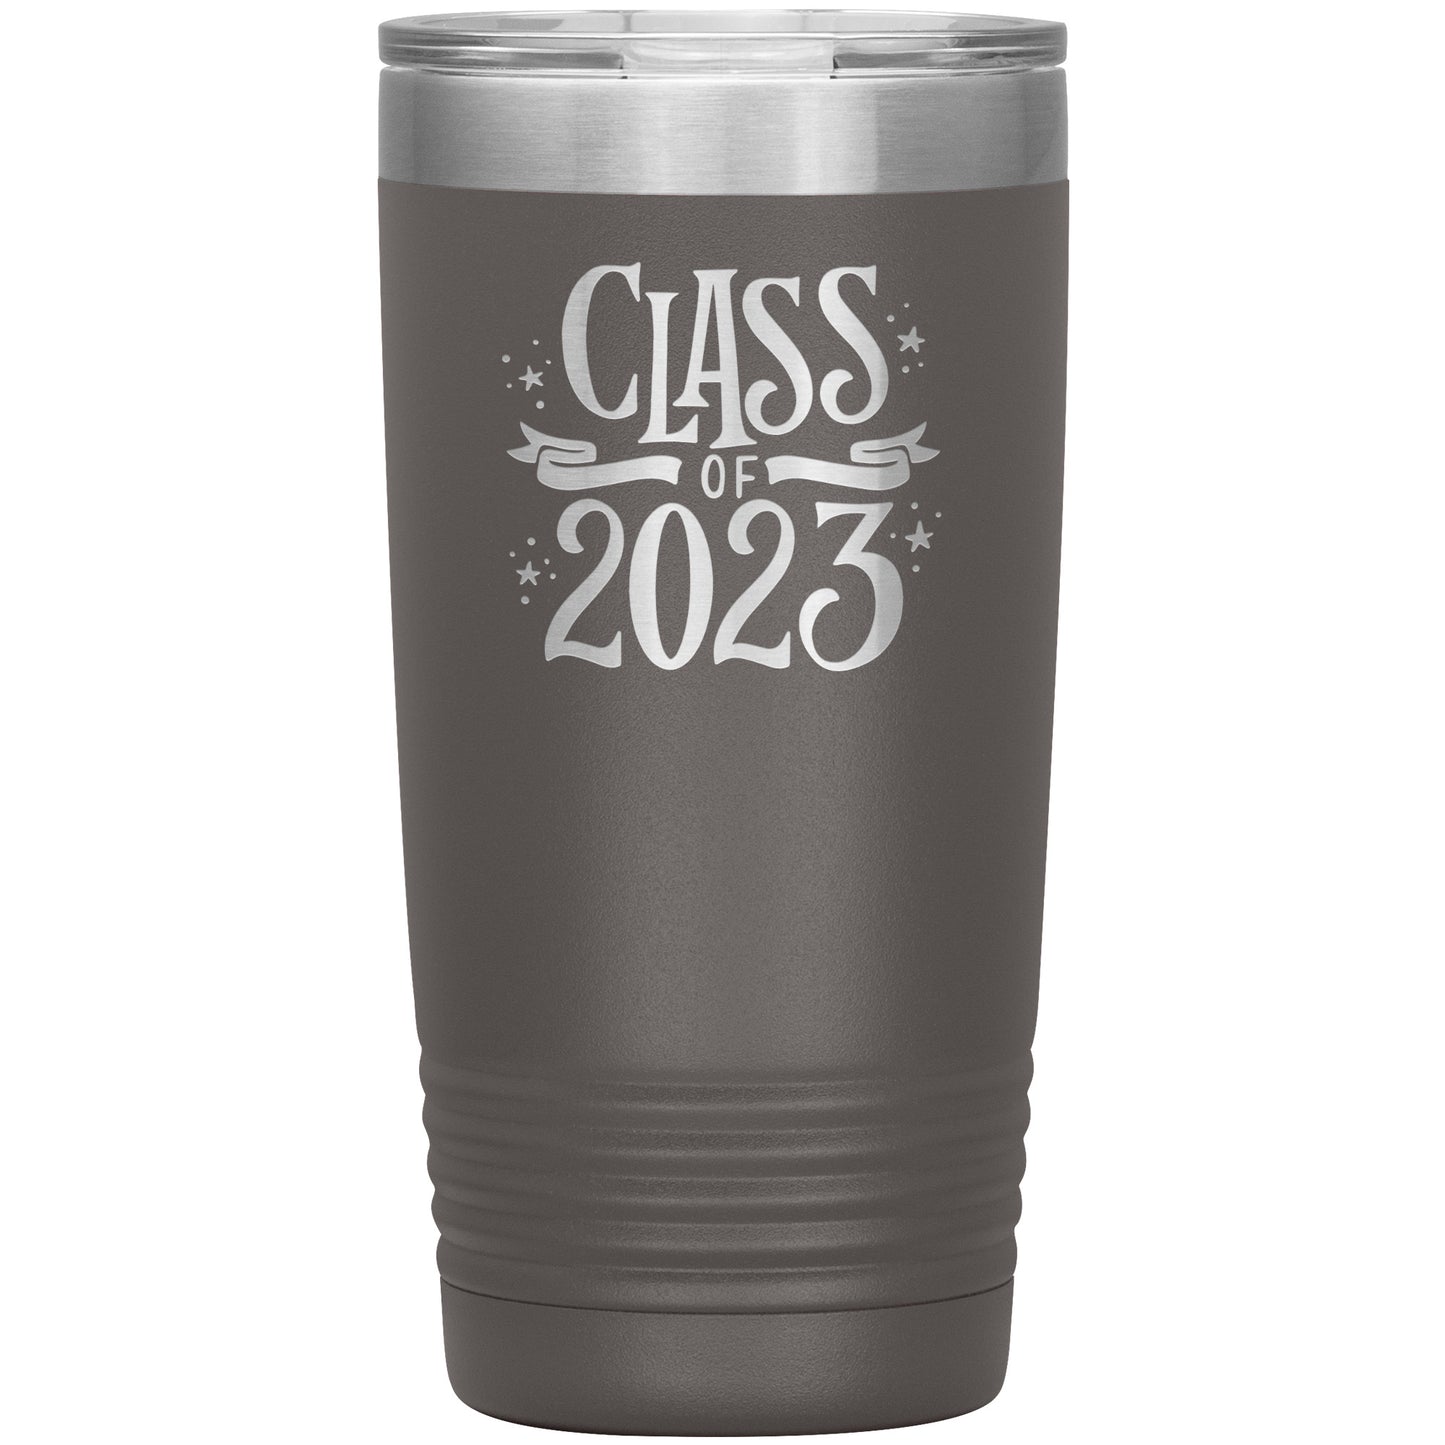 Class of 2023 Tumbler